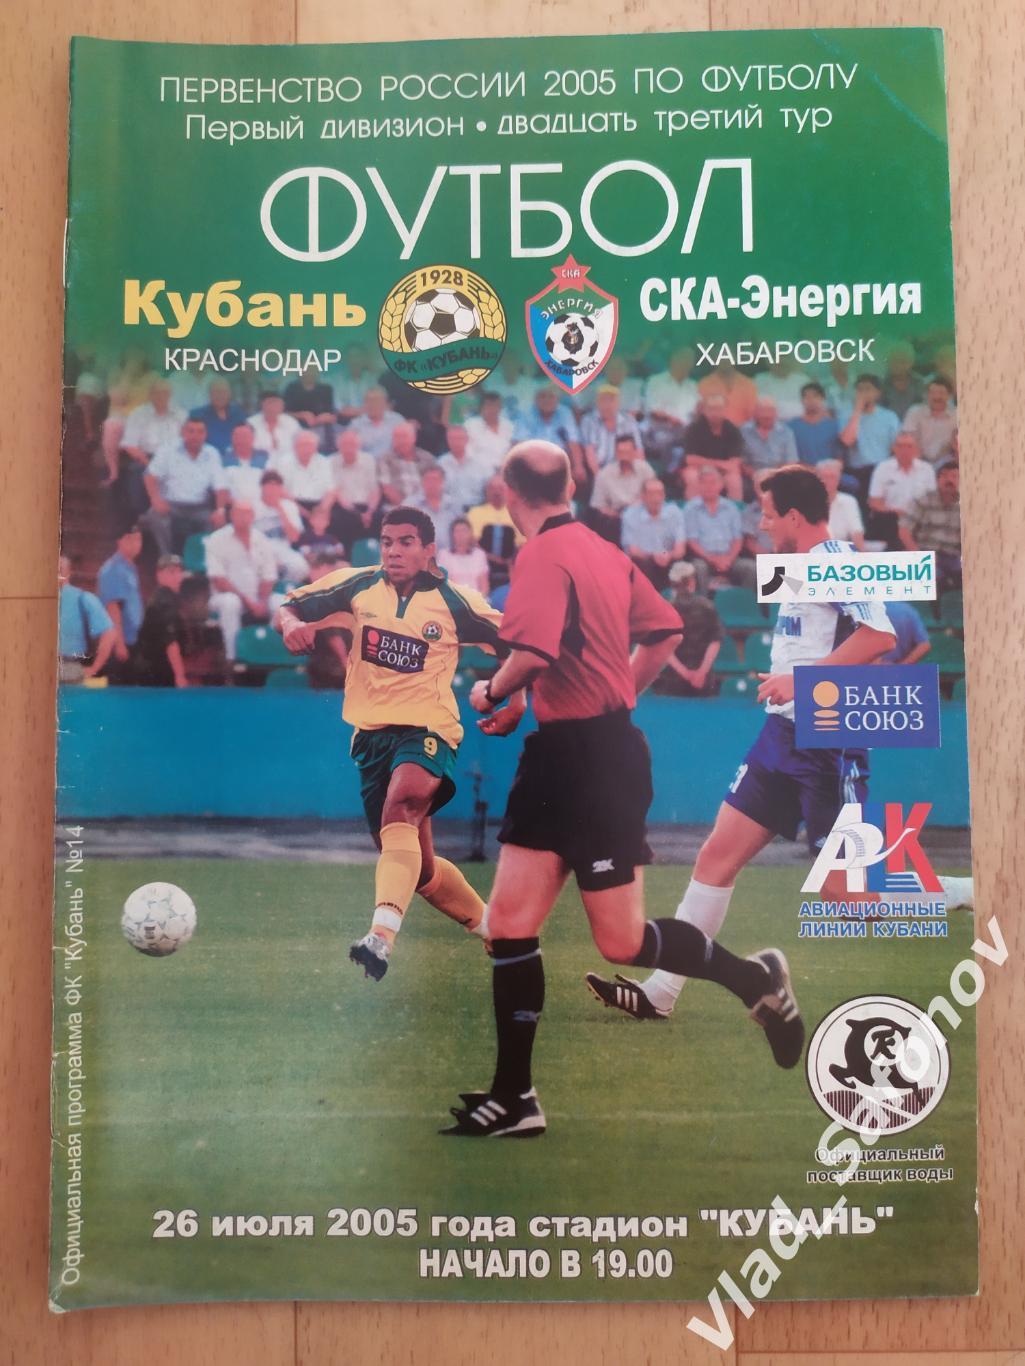 Кубань(Краснодар) - Ска(Хабаровск). 1 дивизион. 26/07/2005